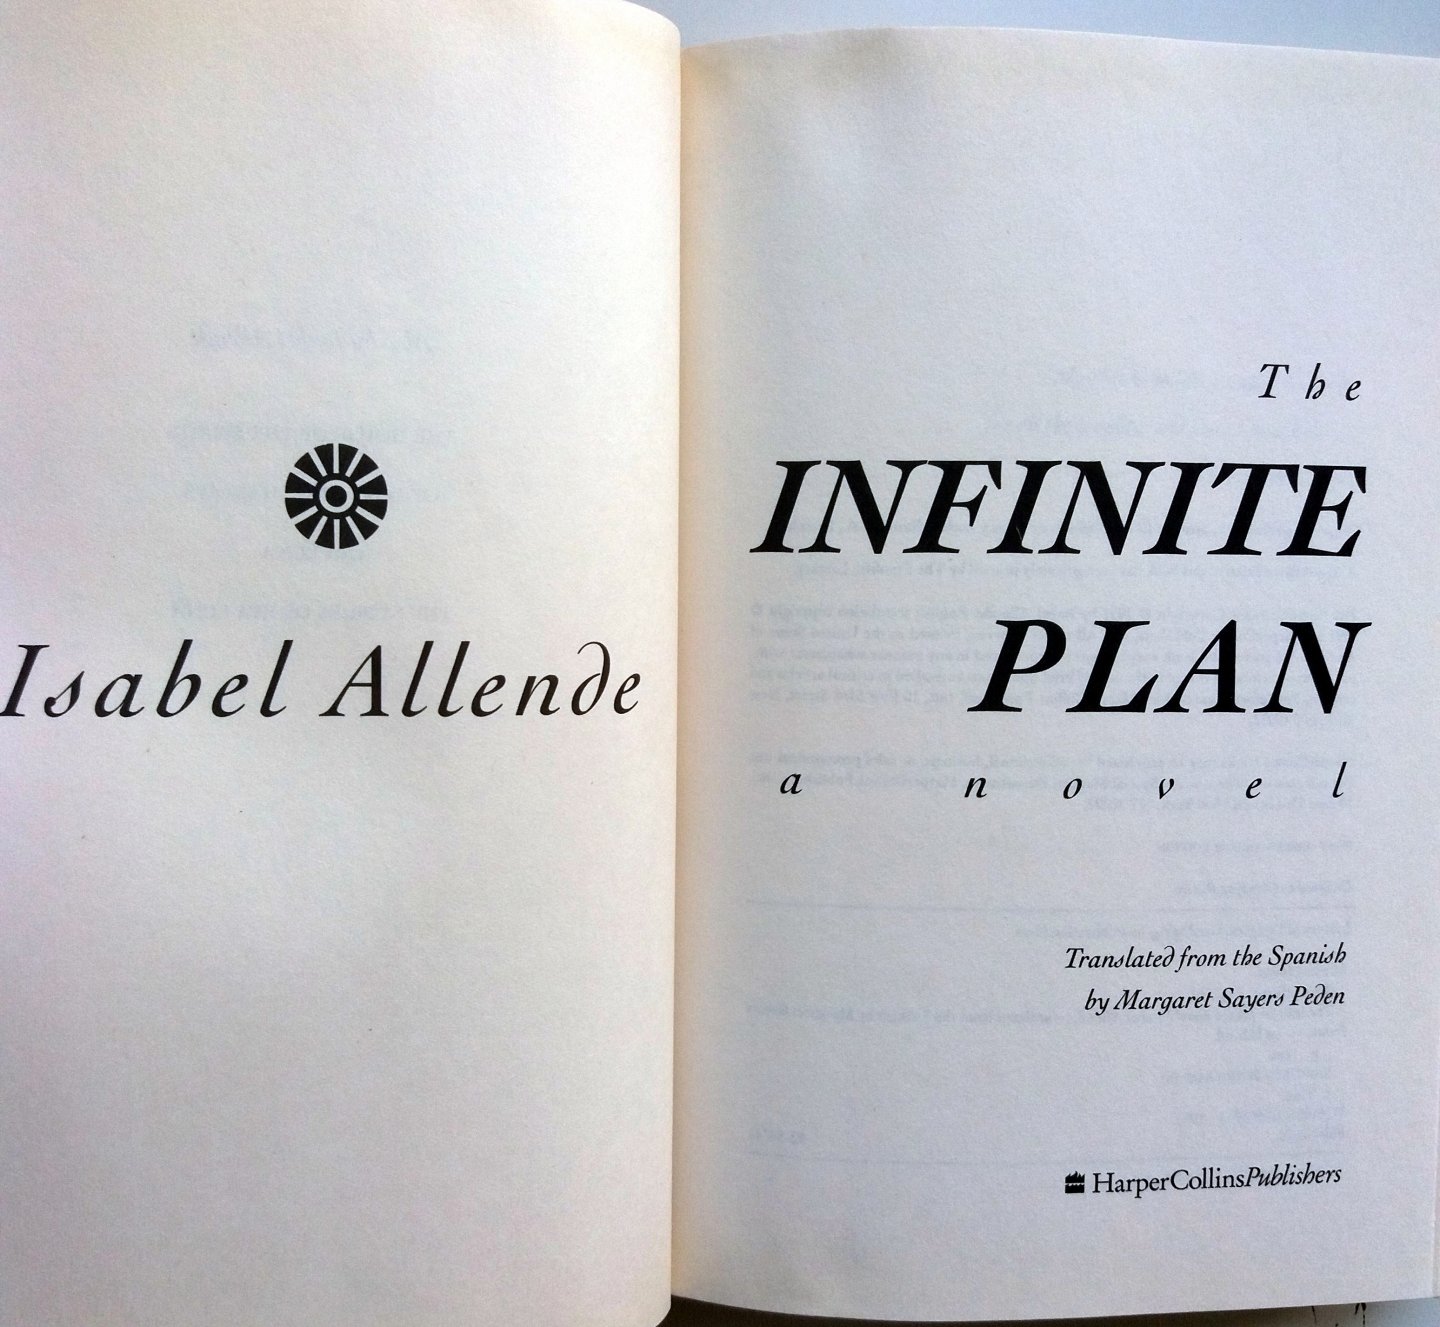 Allende, Isabel - The Infinite Plan (ENGELSTALIG)